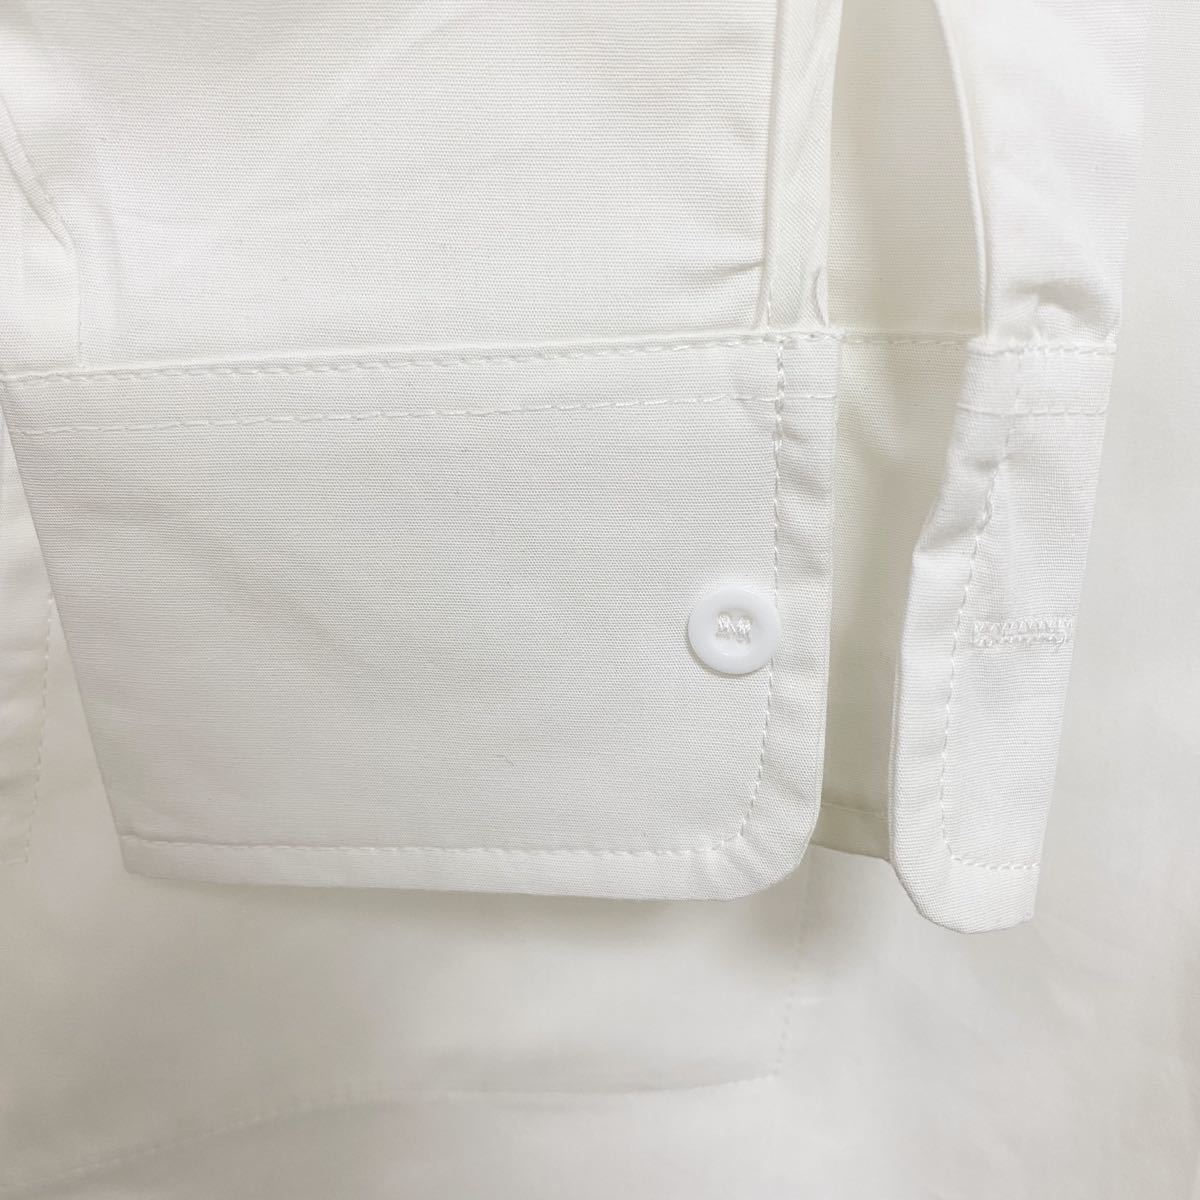 シャツ ワンピース シャツワンピ ロング 白 春服 韓国 ゆったり 体型カバー ロングワンピース シャツワンピース 大きいサイズ 